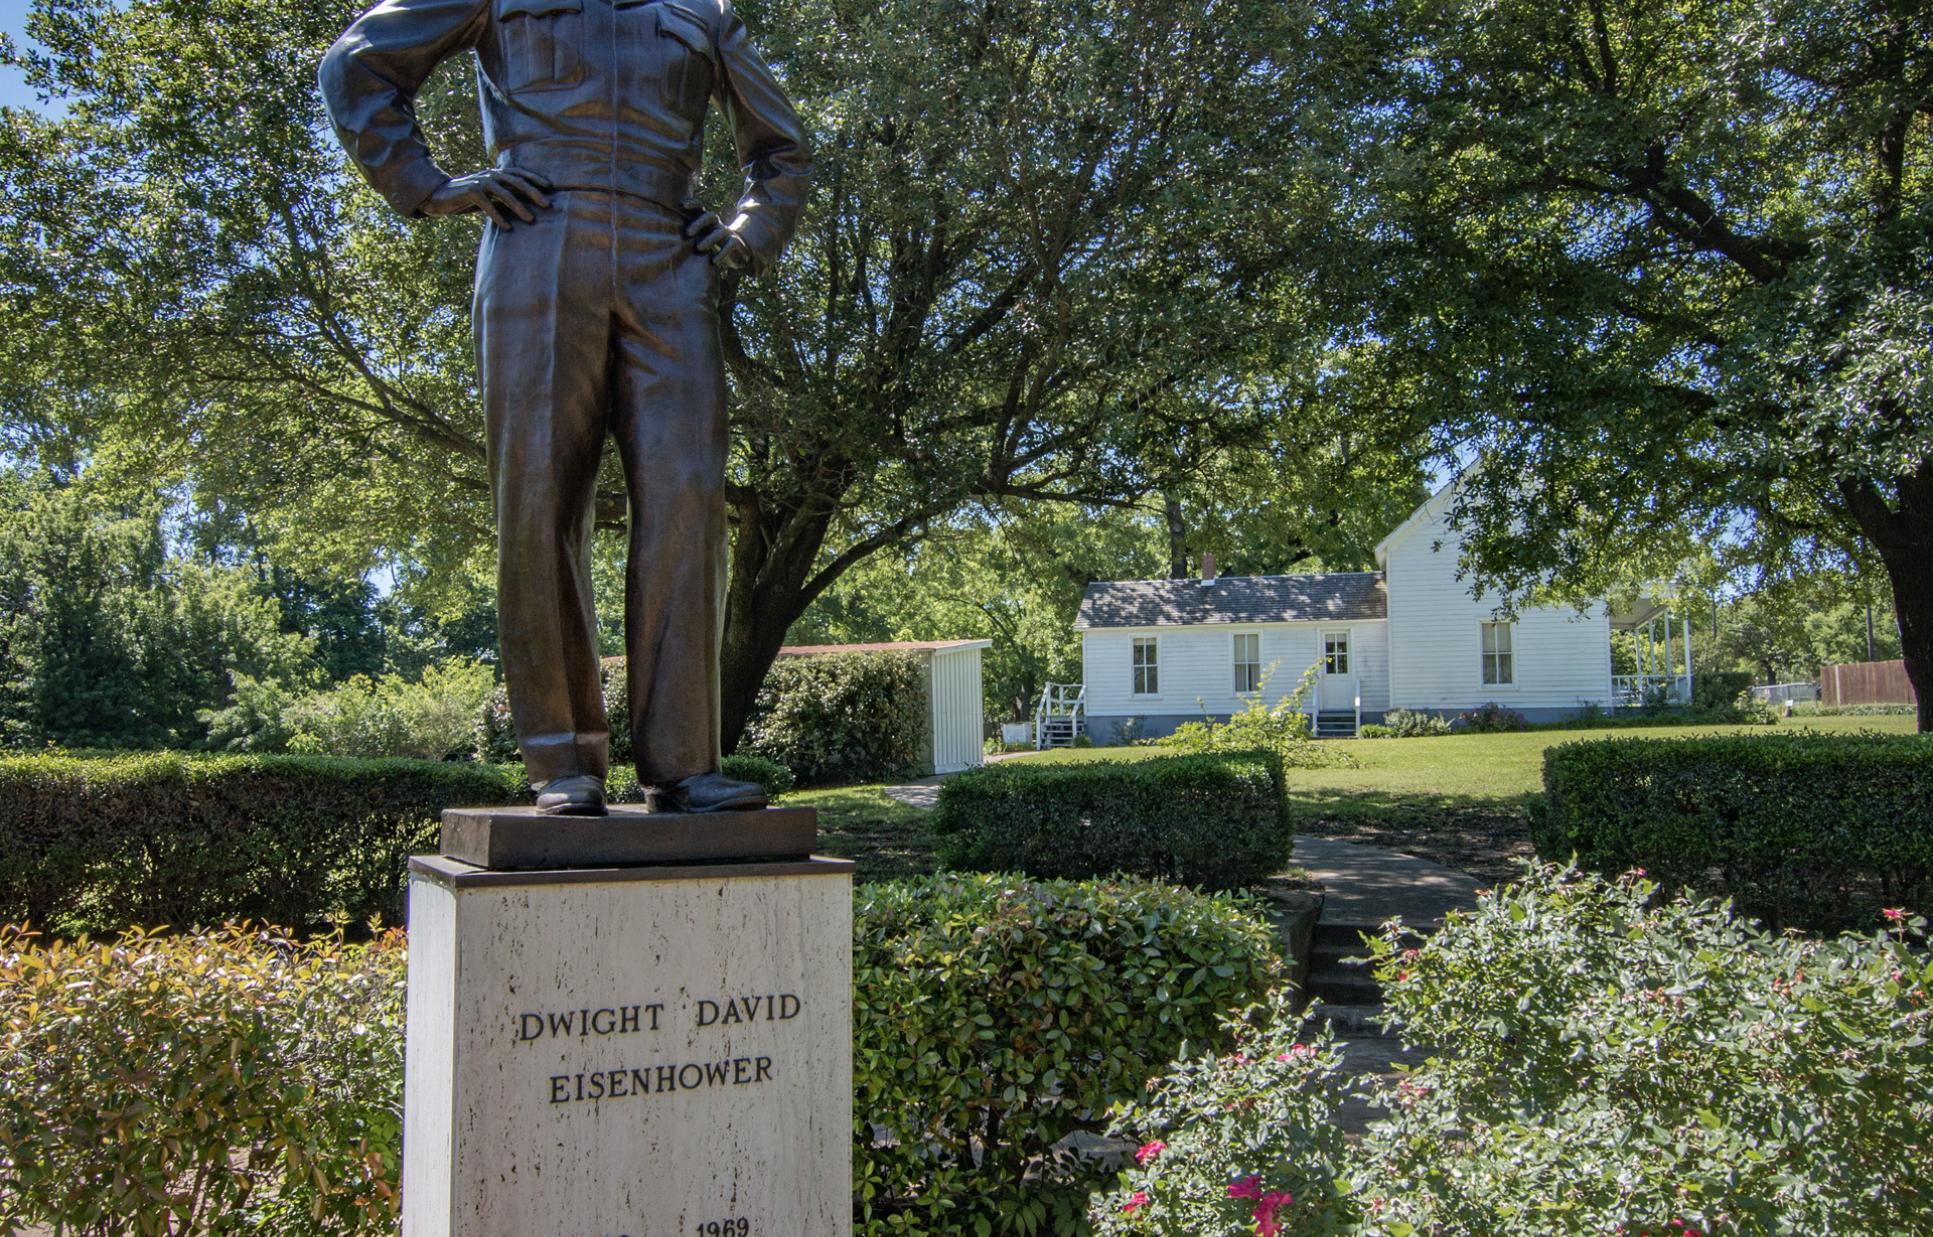 Statue of Eisenhower in the garden